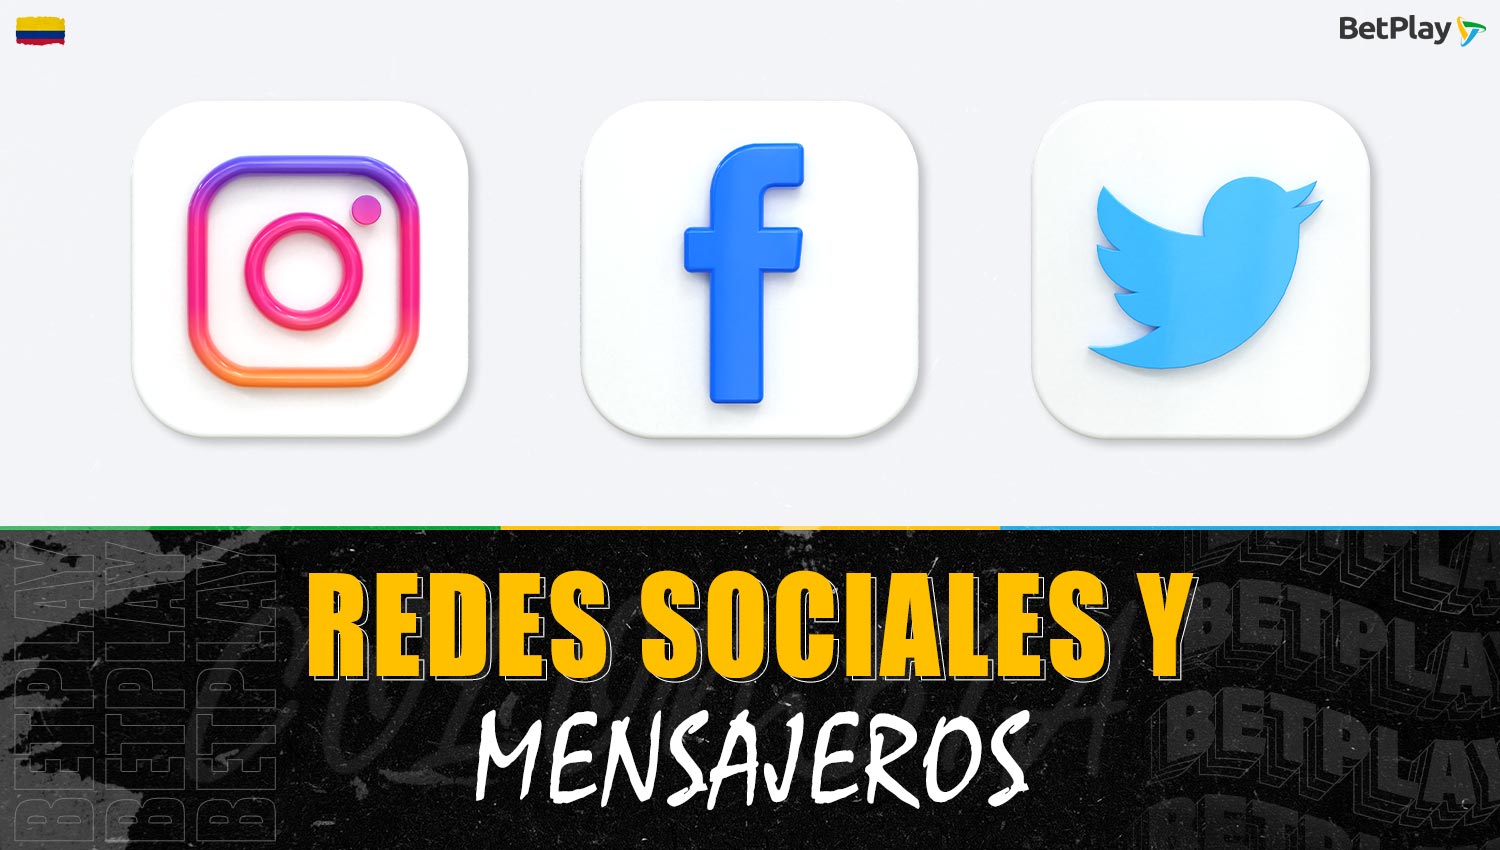 Betplay mantiene contacto con los jugadores de Colombia a través de redes sociales y aplicaciones de mensajería